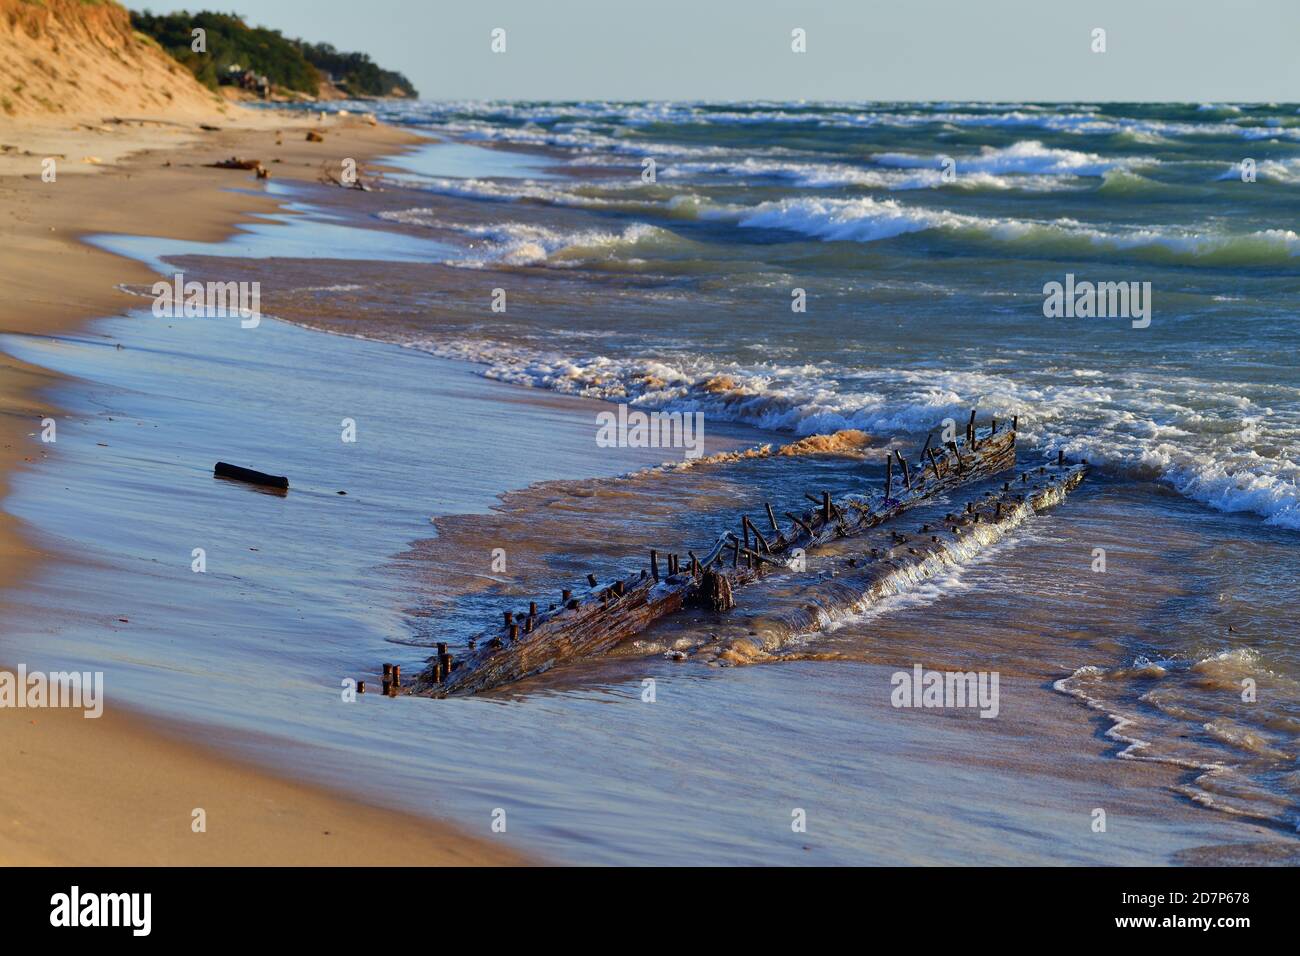 Whitehall, Michigan, USA. Die Überreste eines Schiffswracks aus den Großen Seen, eingebettet in den Sand eines Strandes in der Nähe der White River Light Station. Stockfoto